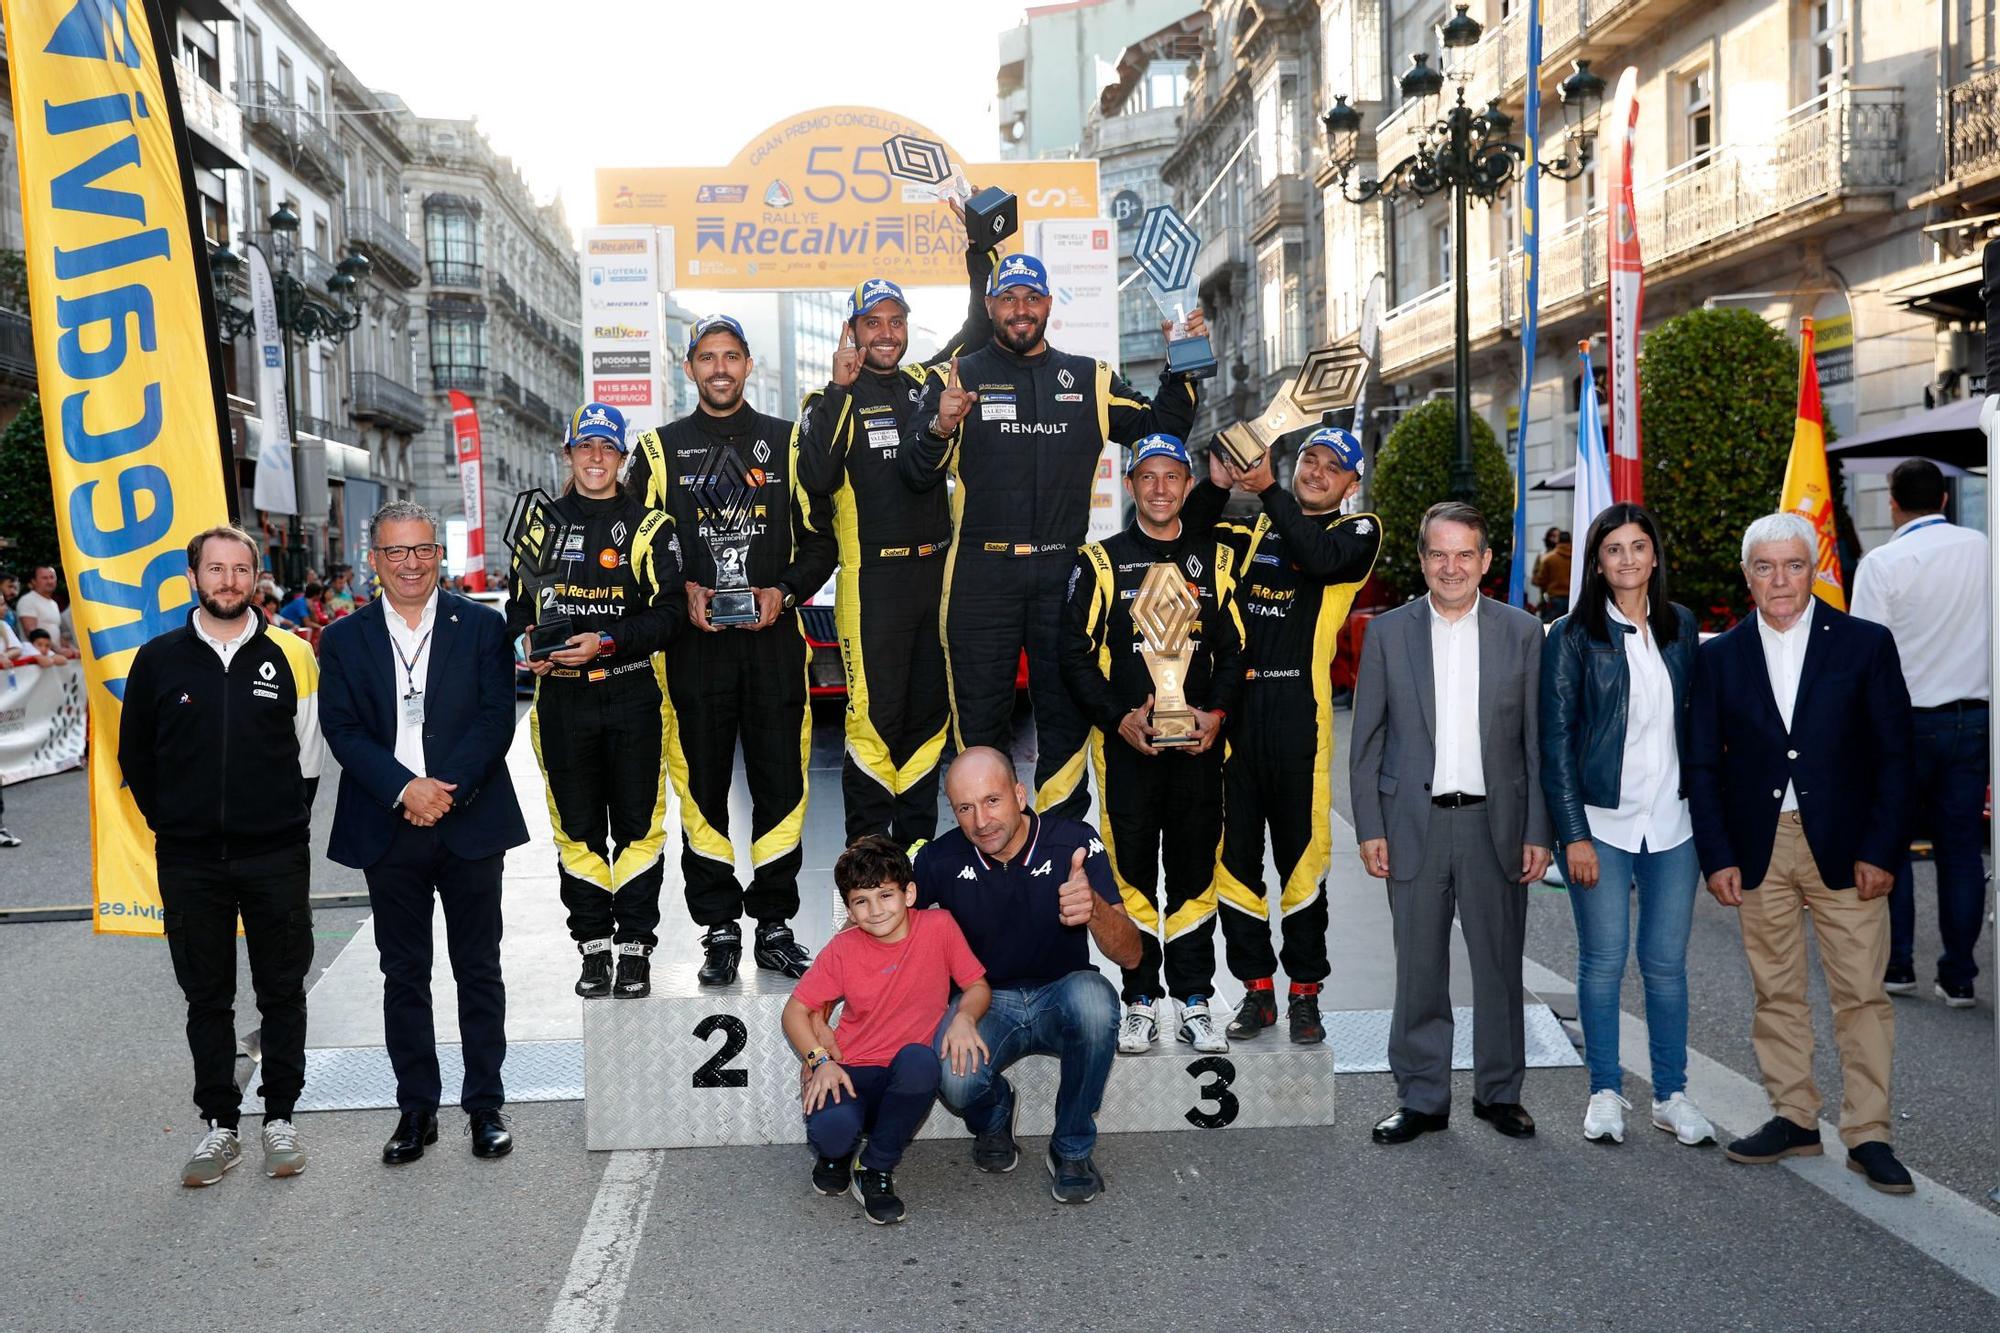 Víctor Senra arrasa en el Rallye Rías Baixas